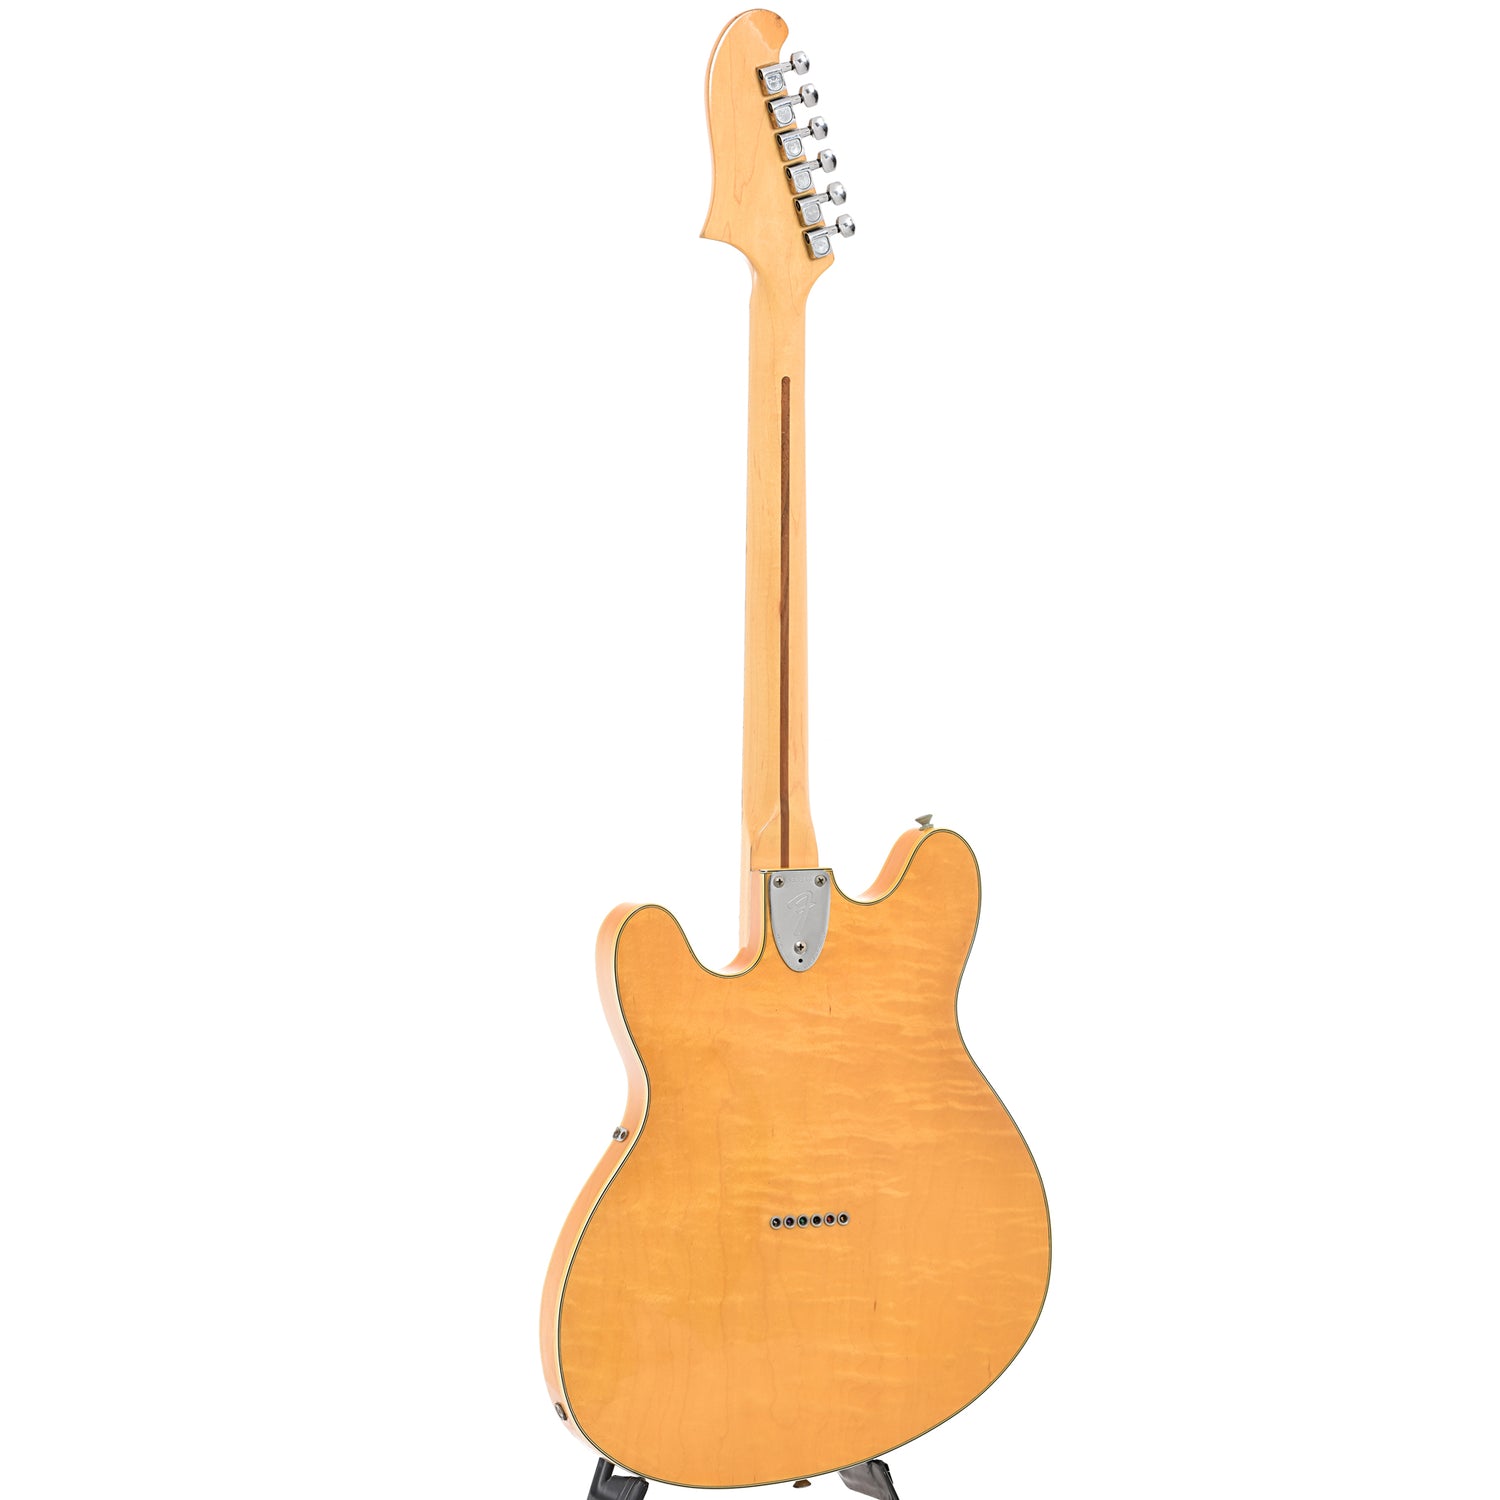 Full back and side of Fender Starcaster